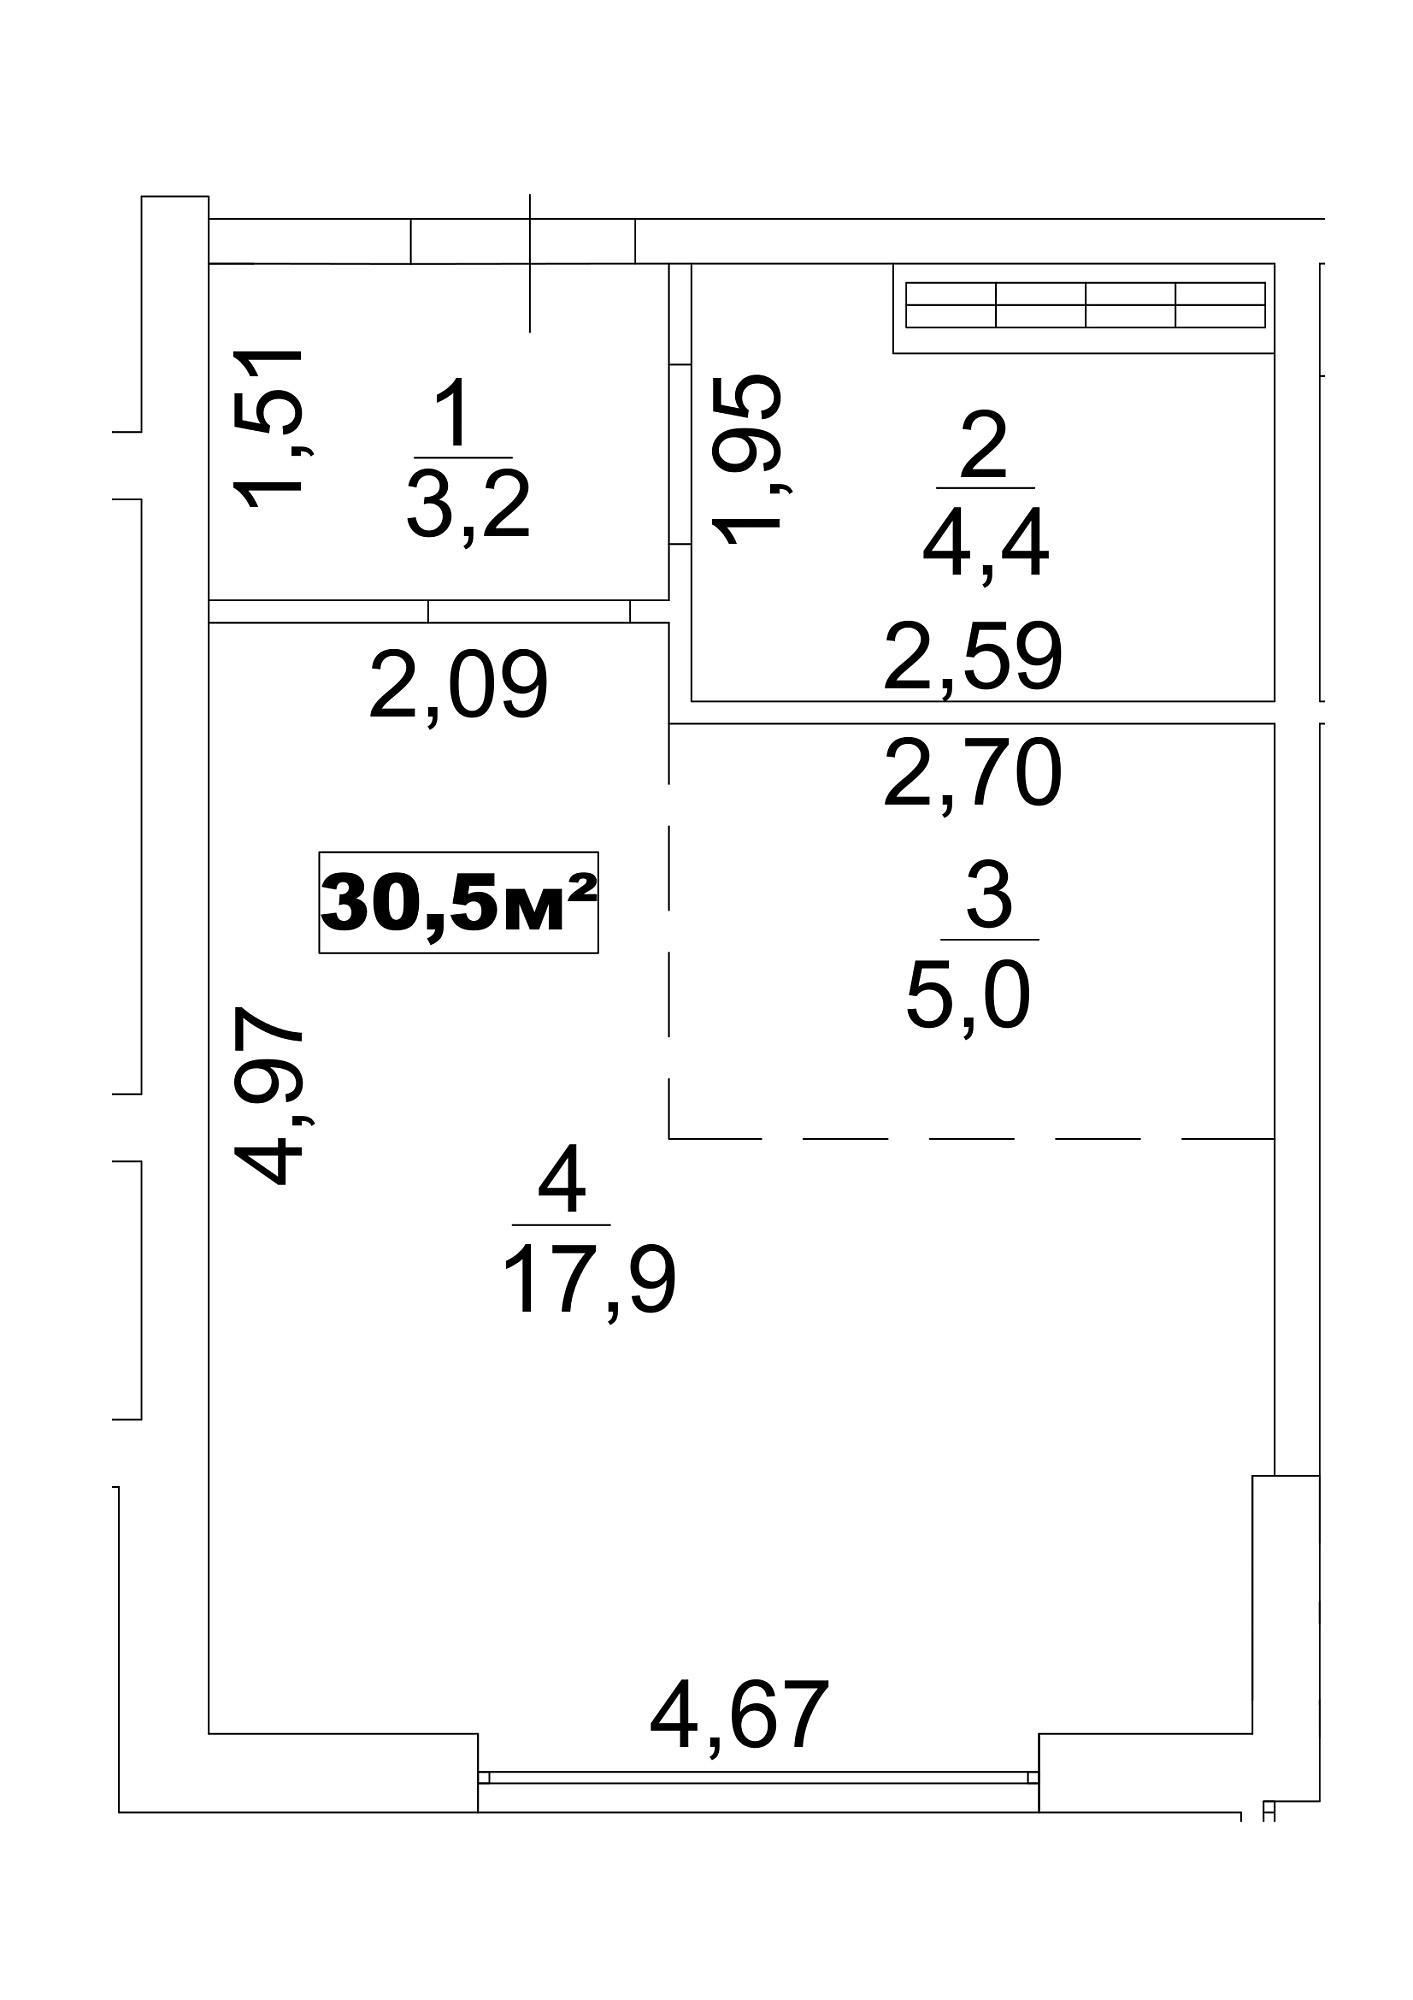 Планування Smart-квартира площею 30.5м2, AB-13-09/00078.